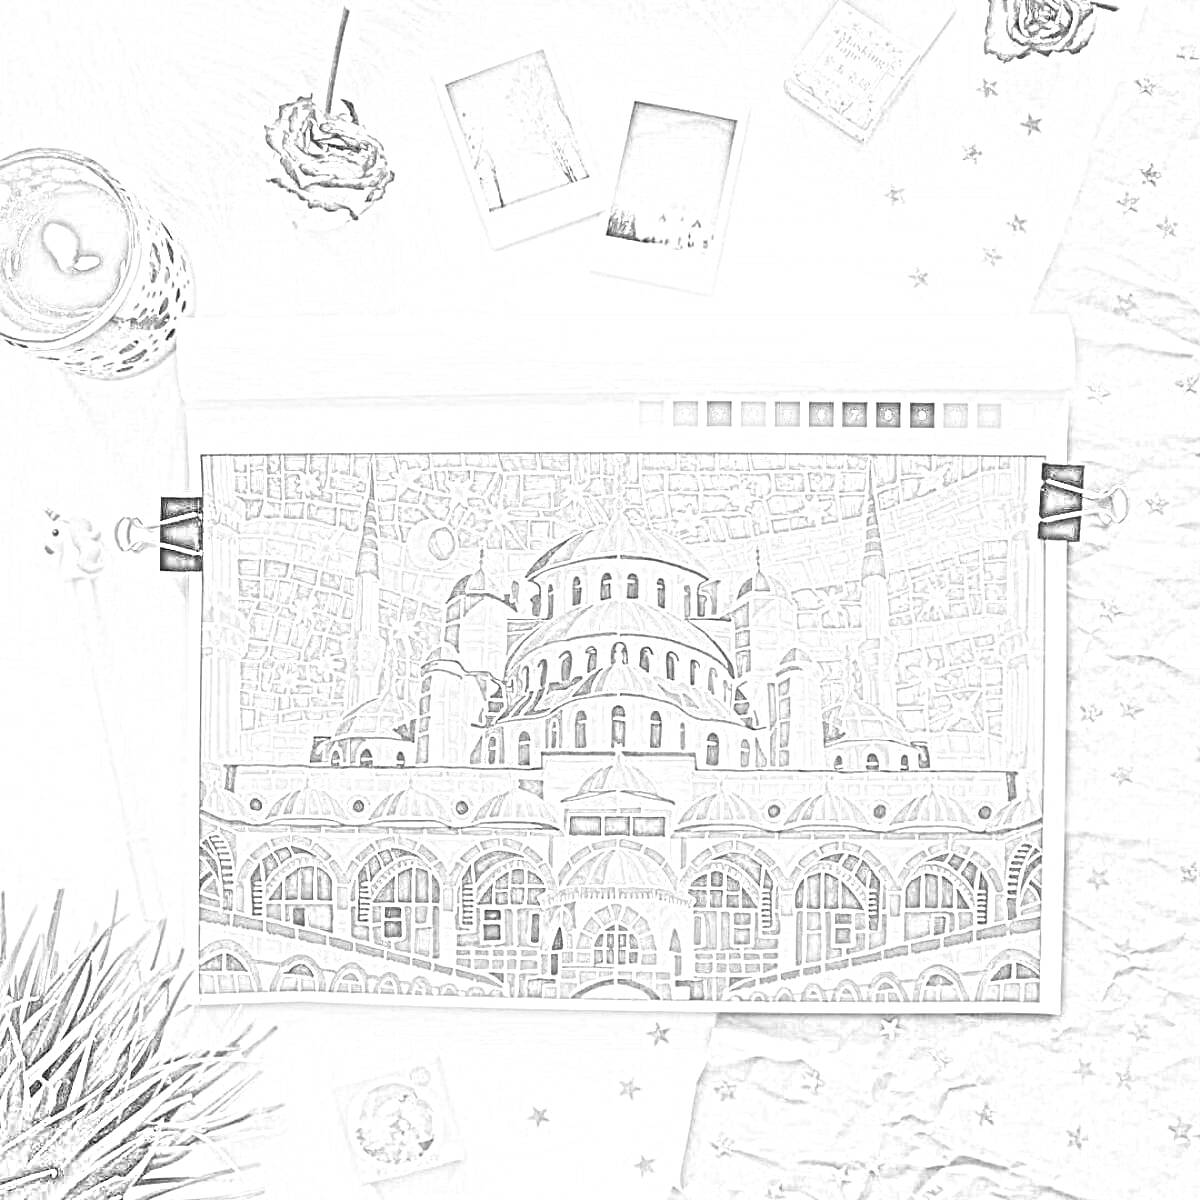 раскраска с изображением архитектурного здания с куполами и минаретами, окруженное предметами (напиток, цветы, фоторамки, коробка на столе, звездочки, трава)